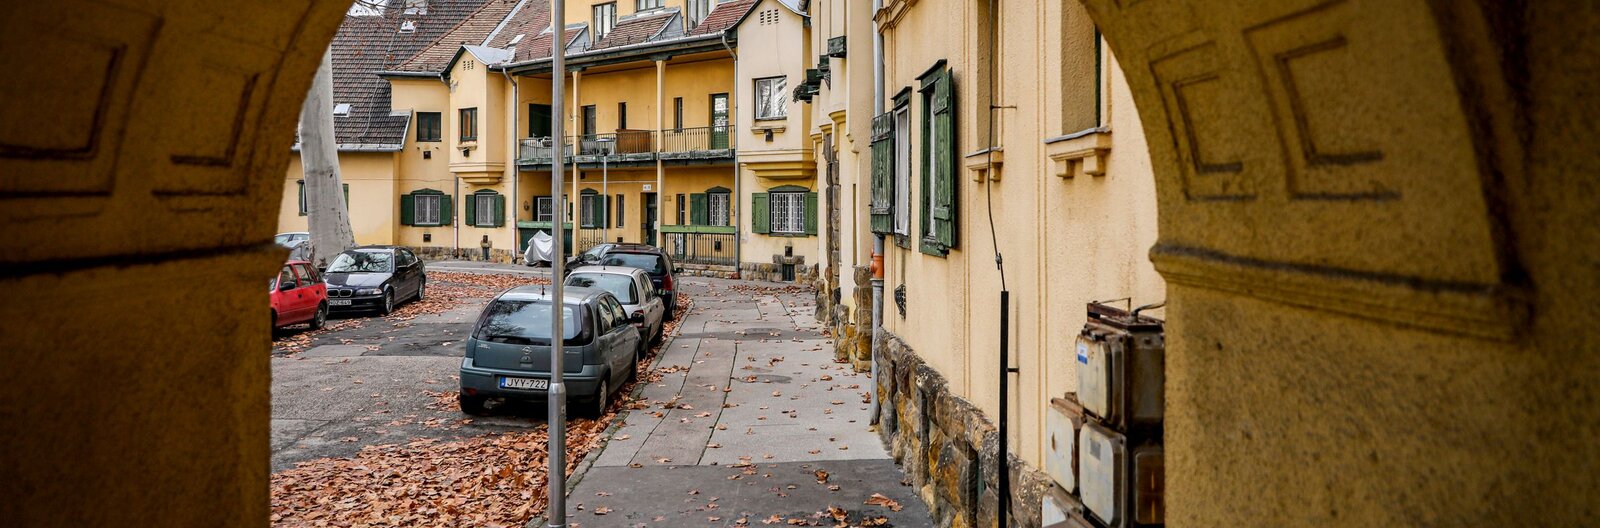 Panelek árnyékában megbújó mézeskalács házak – Kontrasztos budapesti környékek (1. rész)